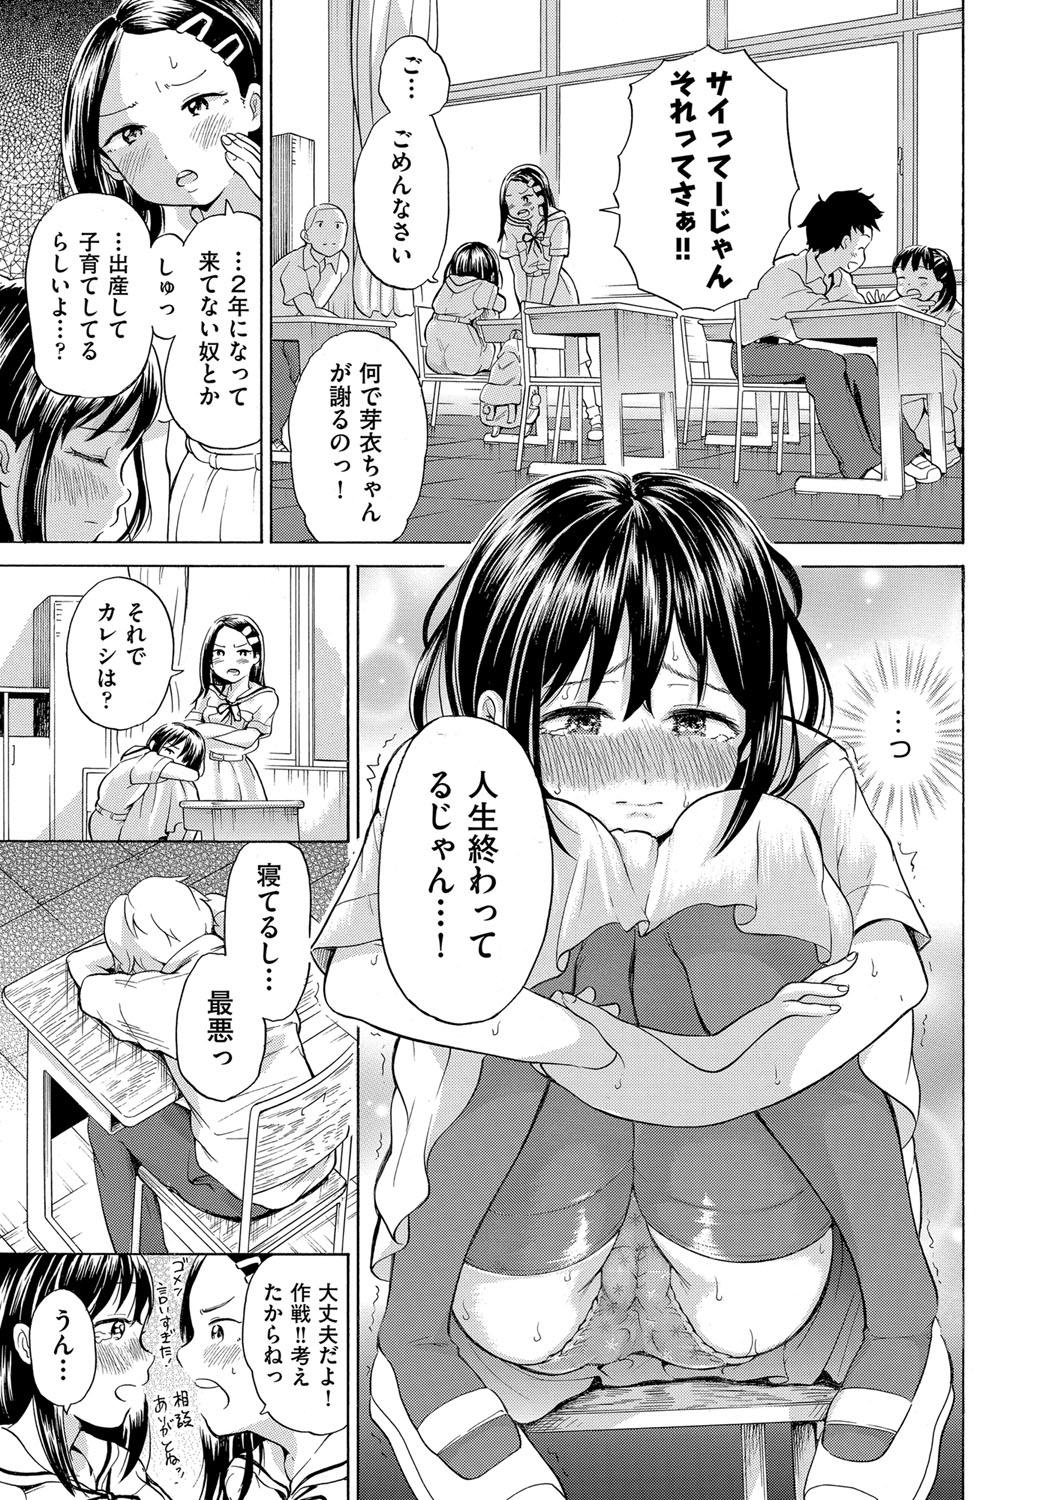 Old Shojo no Karada no kagehinata Amature Porn - Page 8